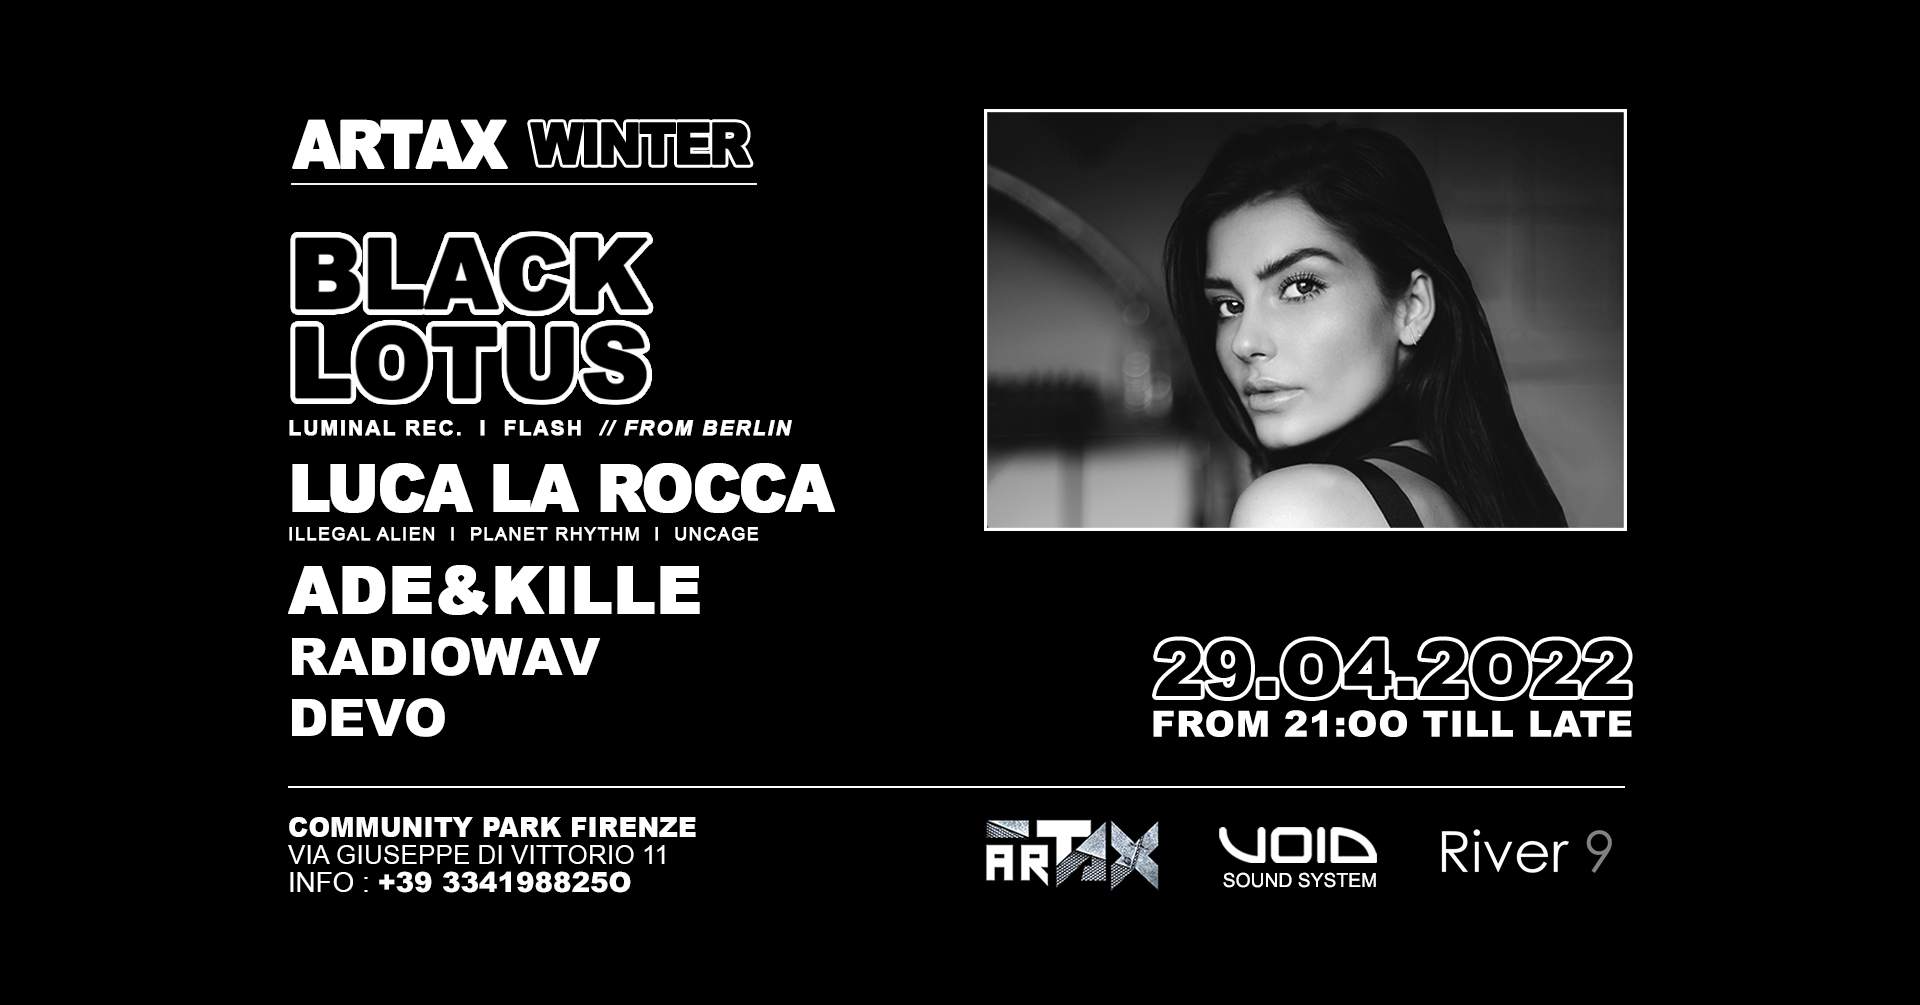 ARTAX with Black Lotus // Firenze 29.04 - フライヤー表